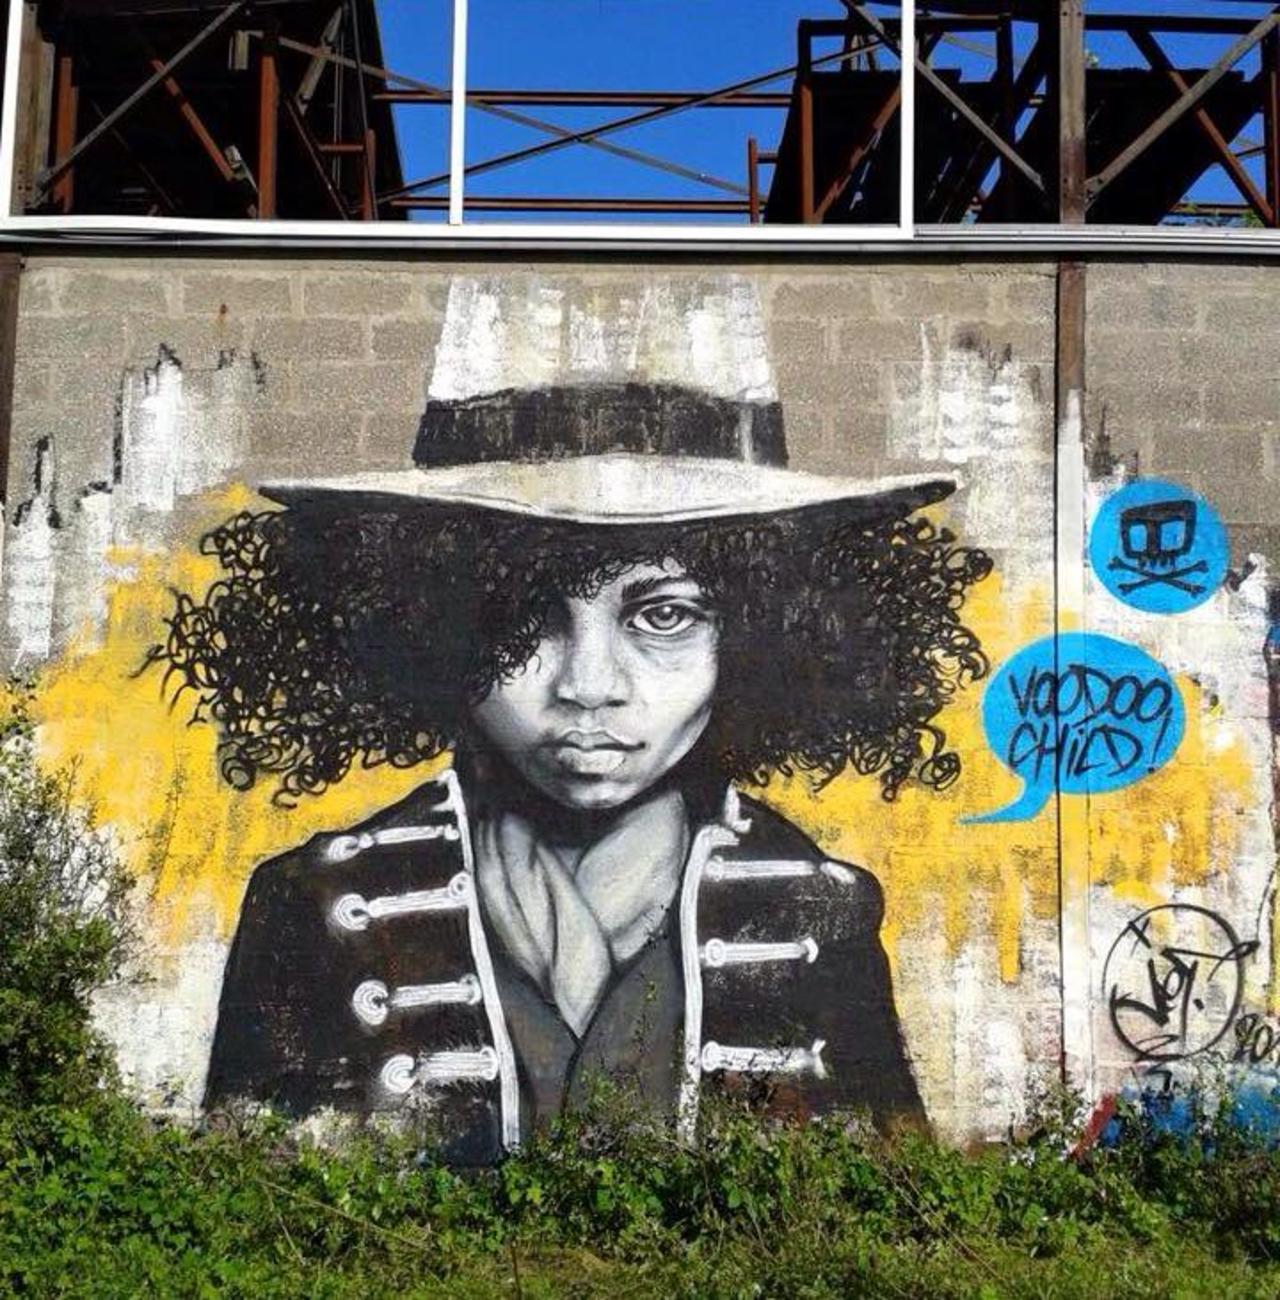 Street Art portrait by Jef 

#art #arte #graffiti #streetart http://t.co/DN3zzEF6YE